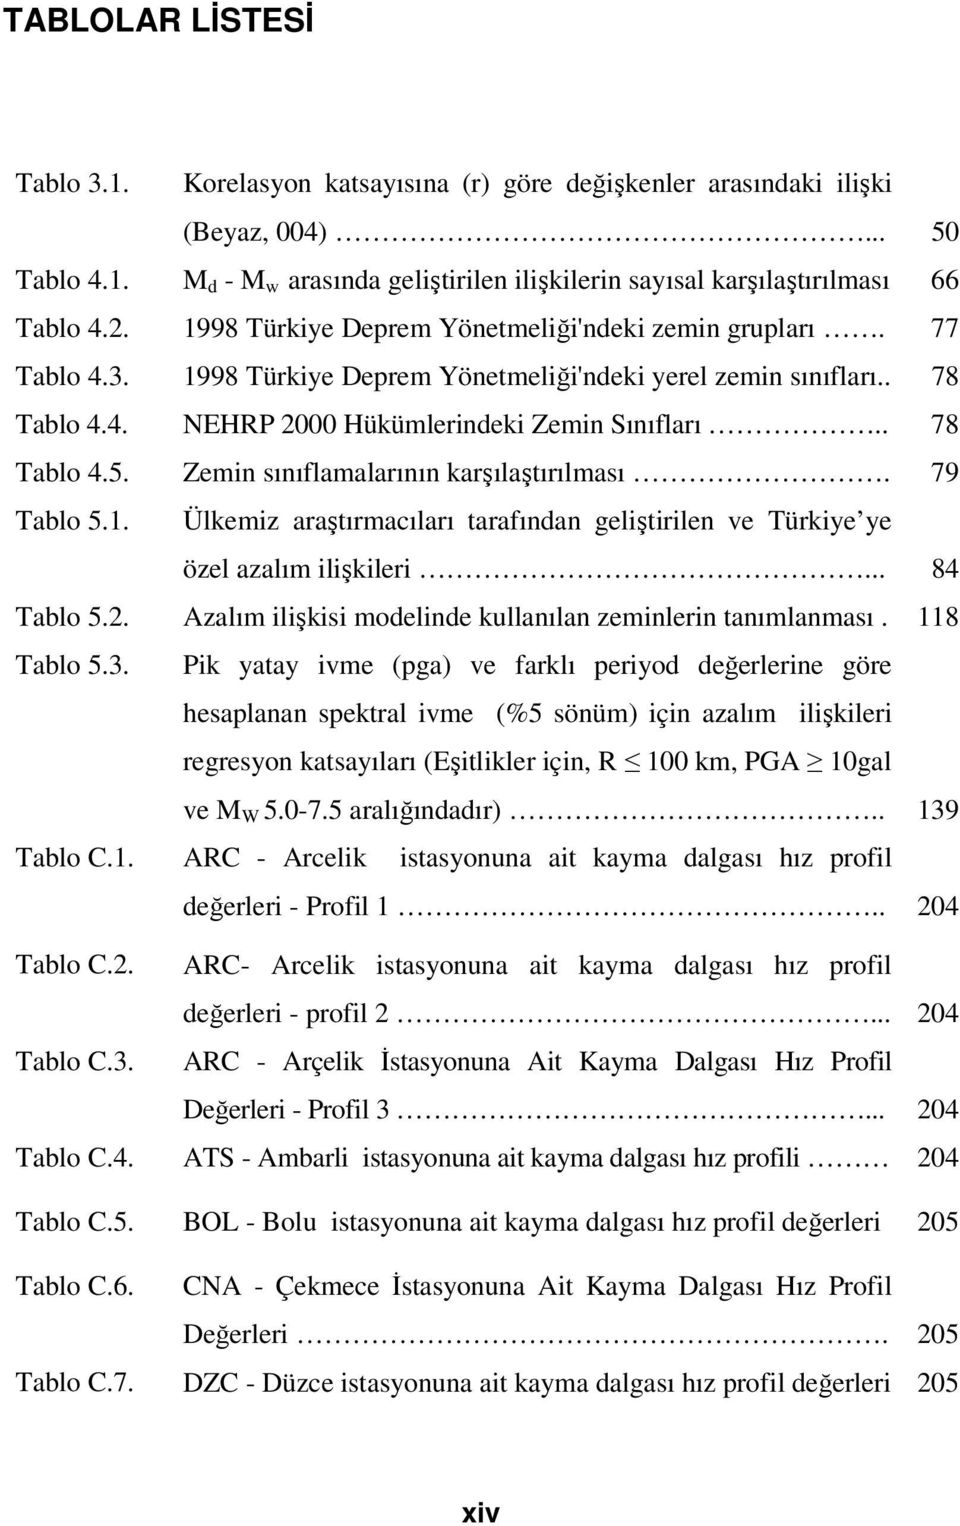 . 78 Tablo 4.5. Zemin sınıflamalarının karşılaştırılması. 79 Tablo 5.1. Ülkemiz araştırmacıları tarafından geliştirilen ve Türkiye ye özel azalım ilişkileri... 84 Tablo 5.2.